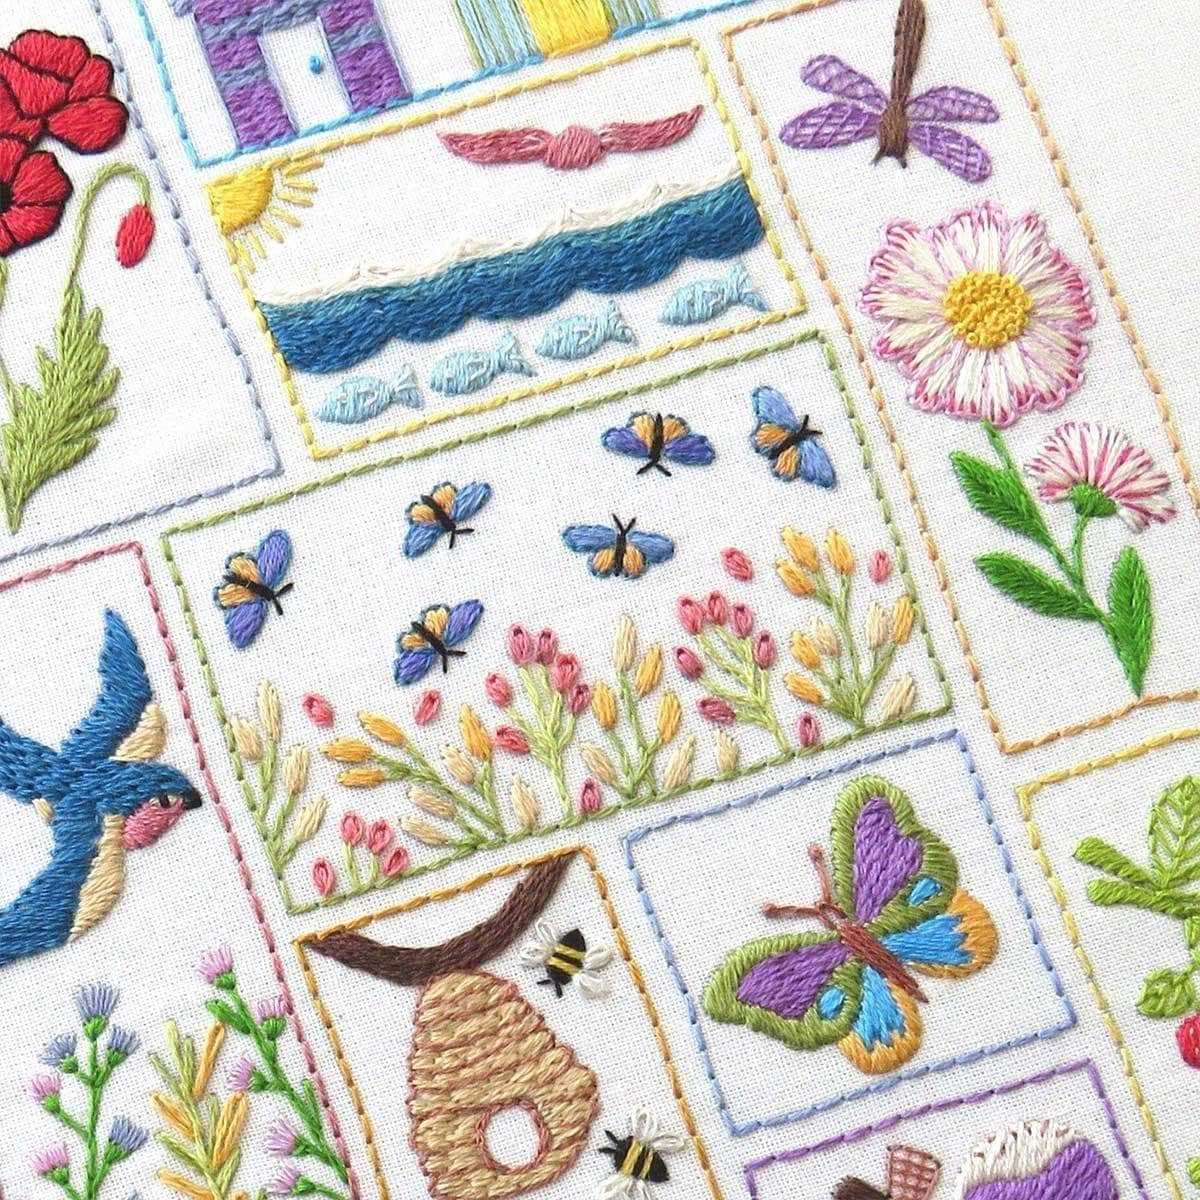 Summer Splendour Hand Embroidery Kit, Pre Printed Embroidery Fabric, Hand  Embroidery Supplies, Nature Embroidery, Beginner Hand Embroidery 